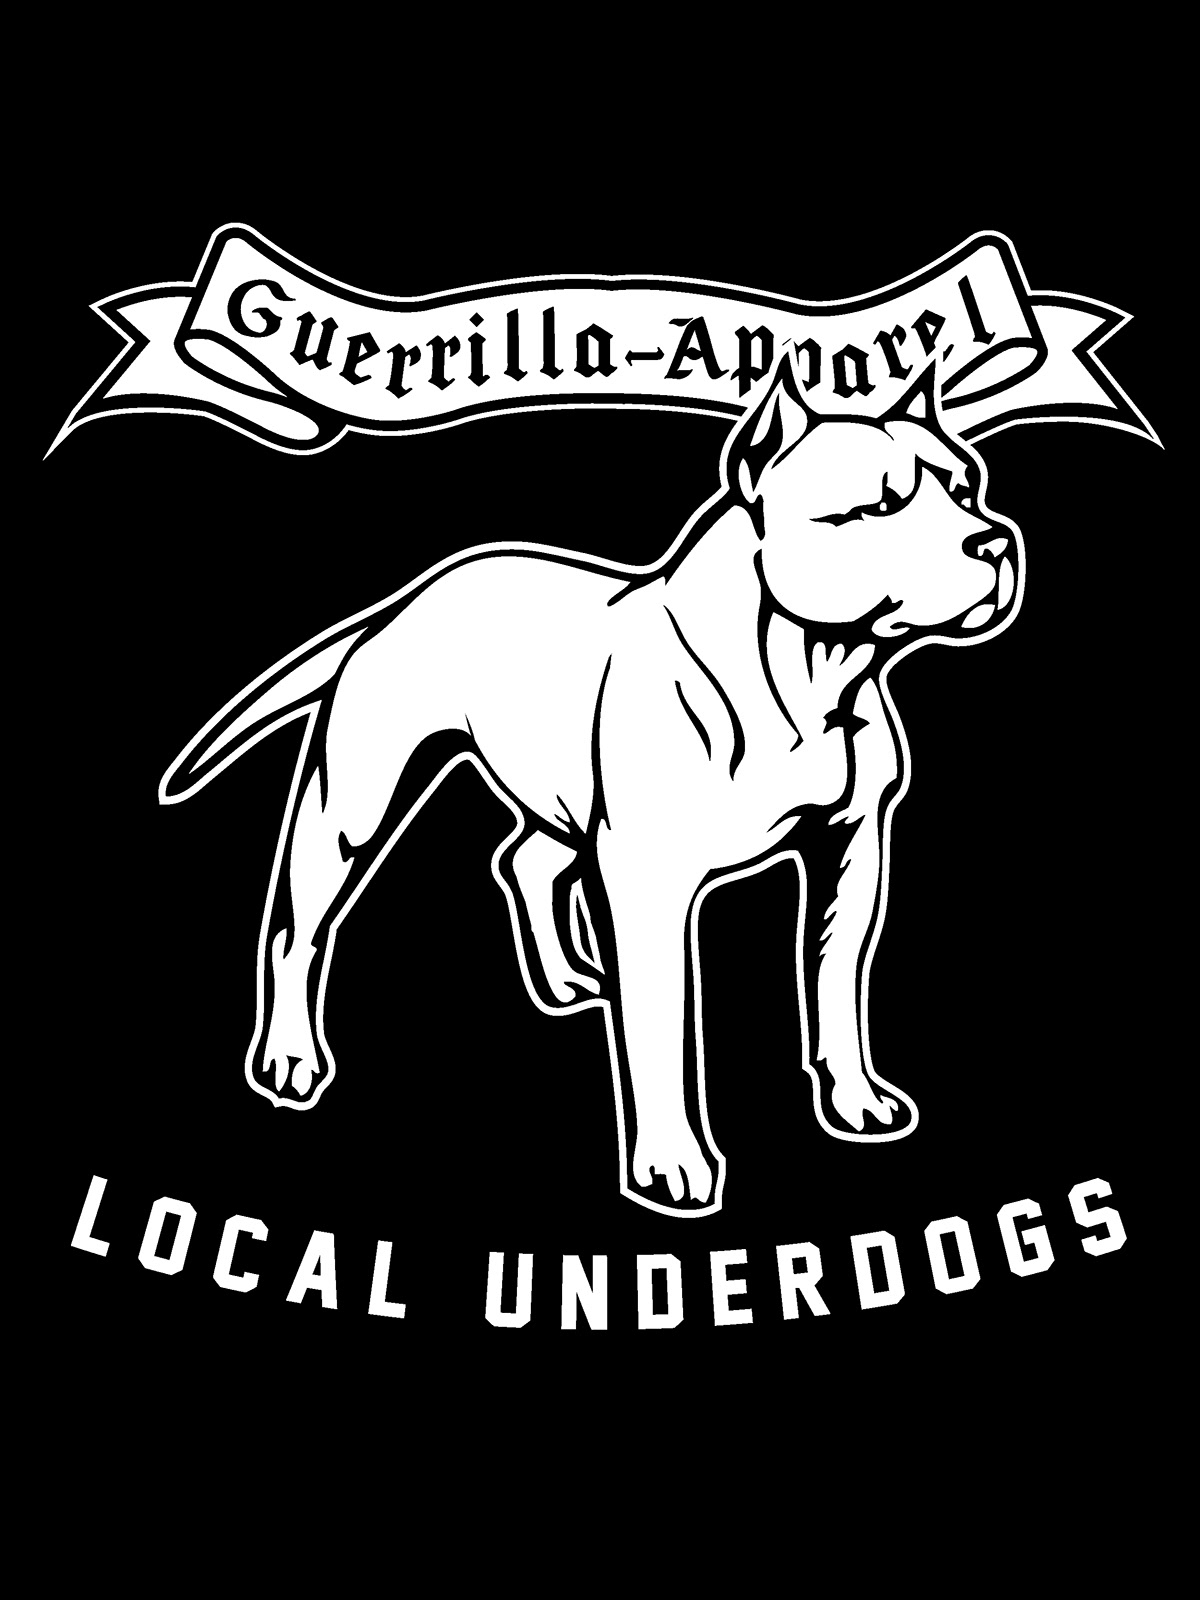 guerrilla apparel local UNDERDOGS streetwear